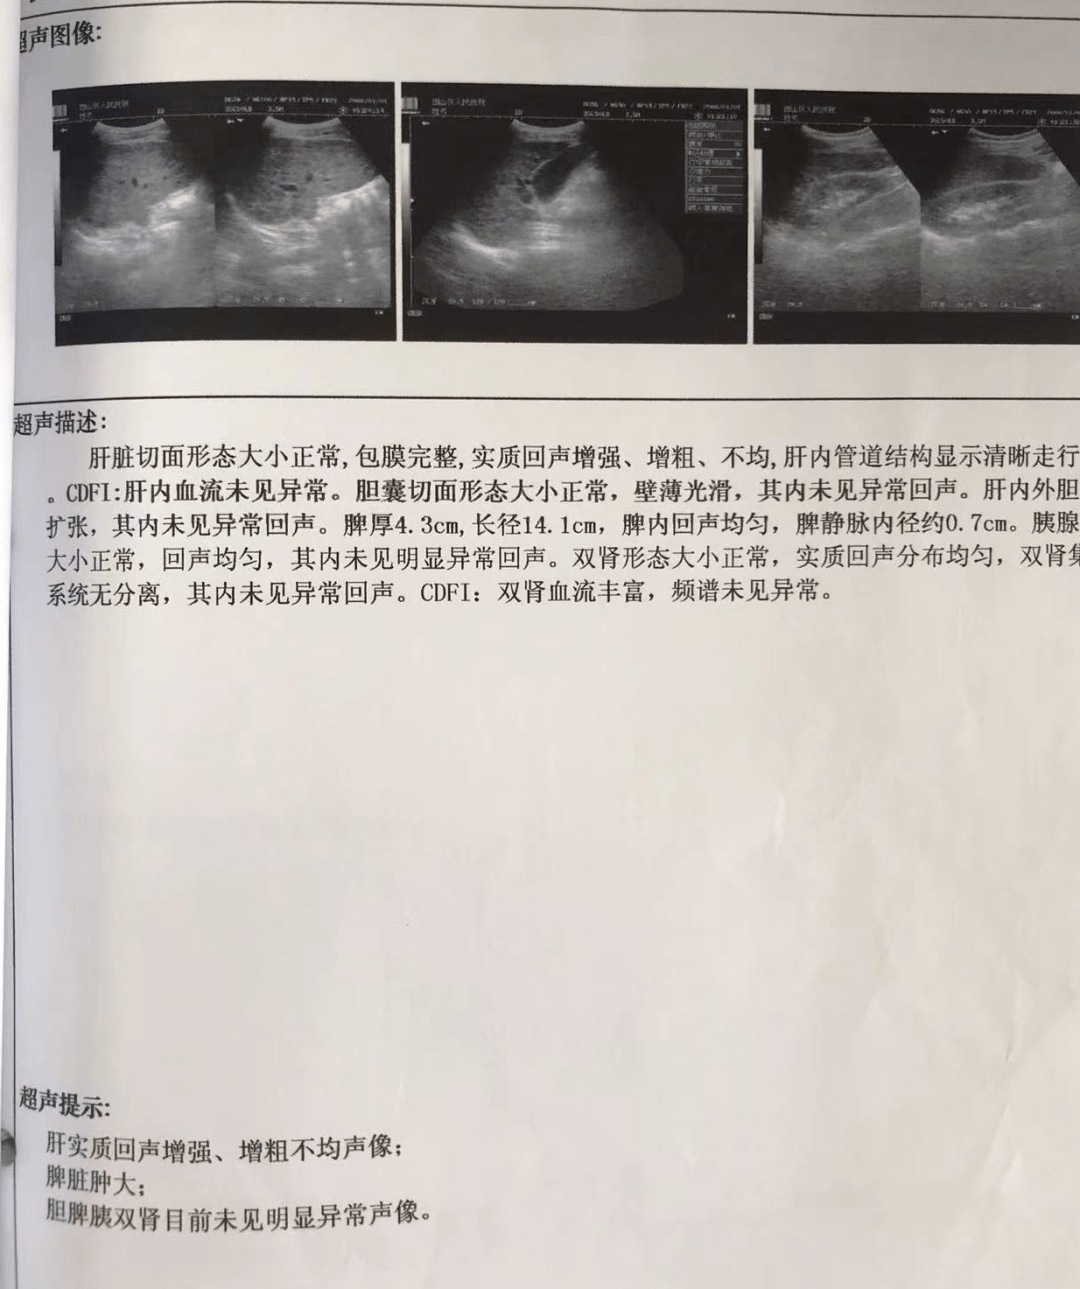 「病例分享」肝豆状核变性继发震颤:35岁男性患者,双手不自主抖动10年